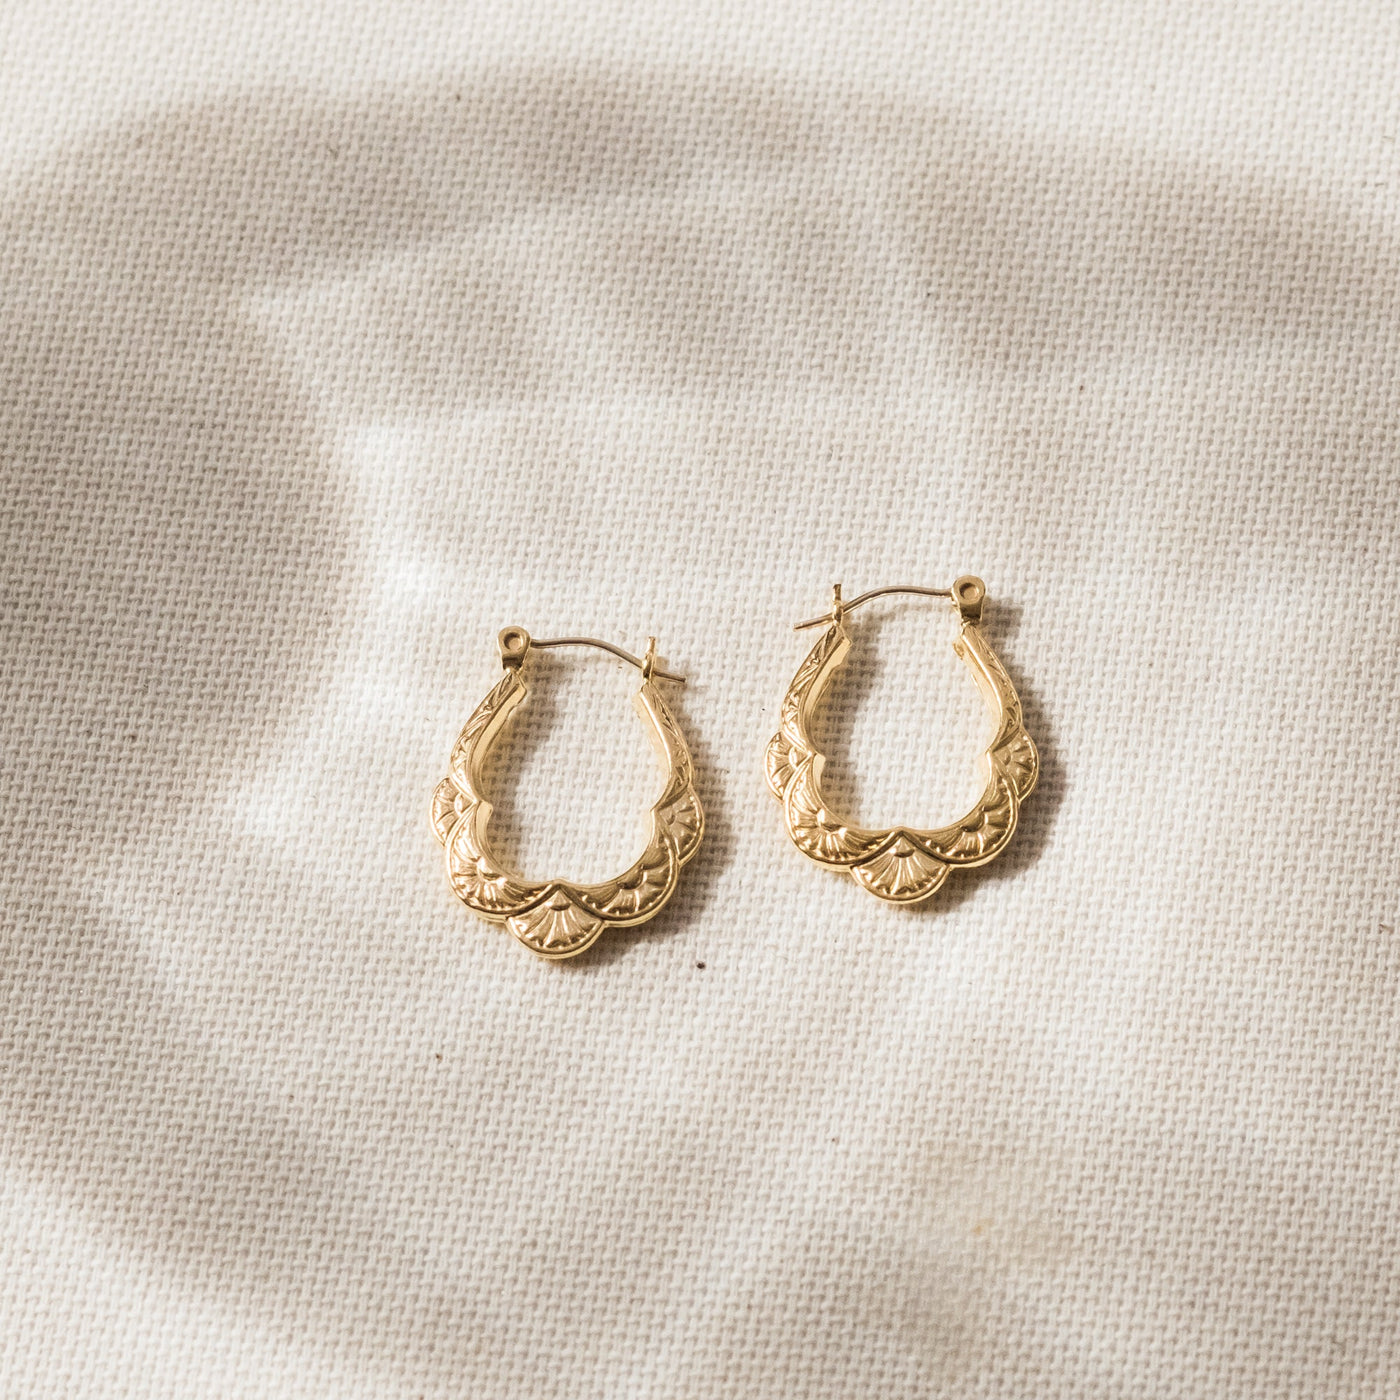 Vintage Scalloped Hoop Earrings | Simple & Dainty Jewelry